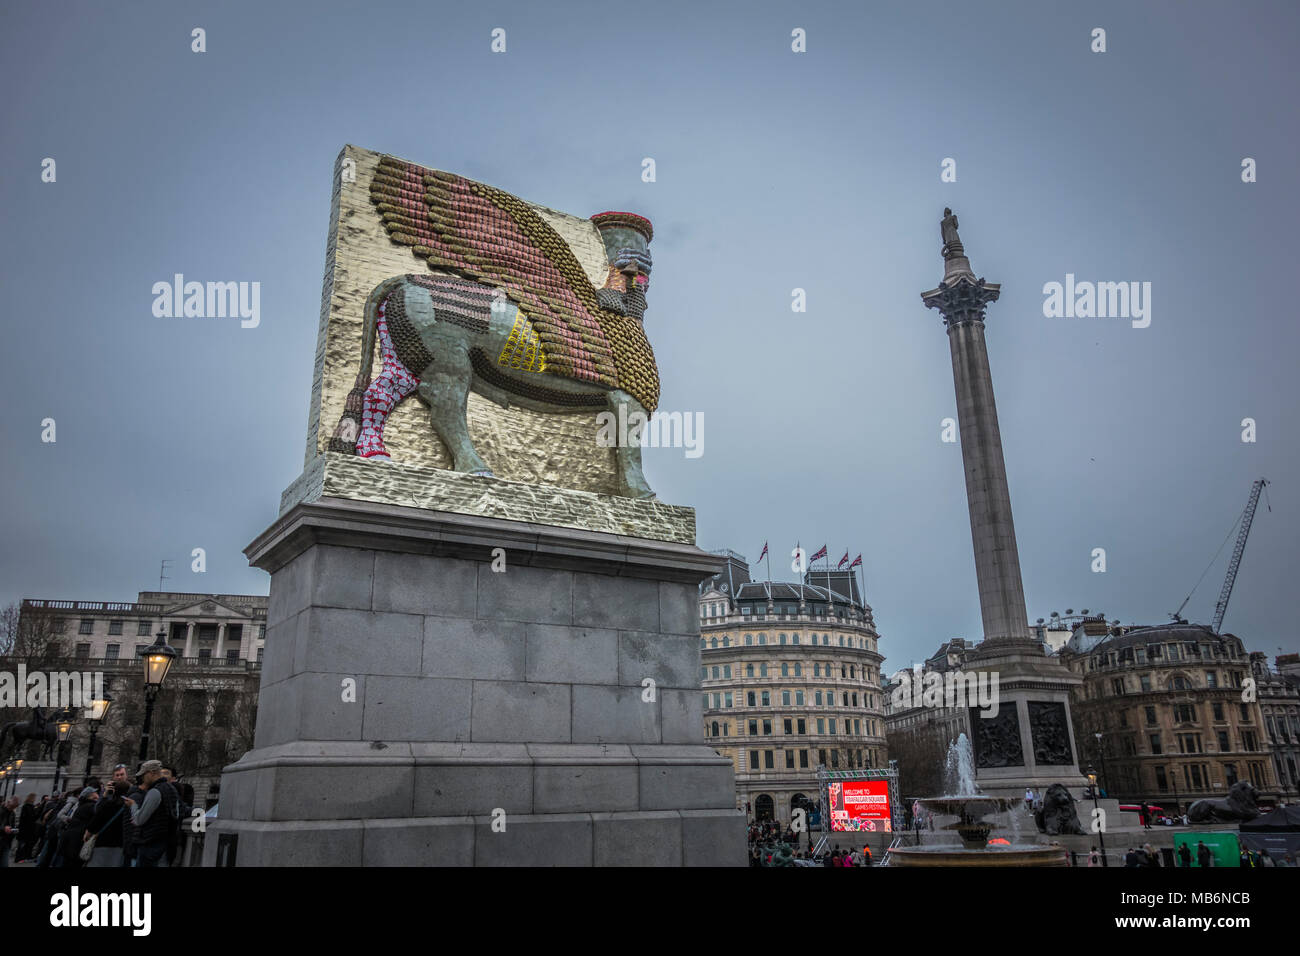 Michael Rakowitz 'Il nemico invisibile non dovrebbero esistere' sul quarto plinto, Trafalgar Square, London, Regno Unito Foto Stock